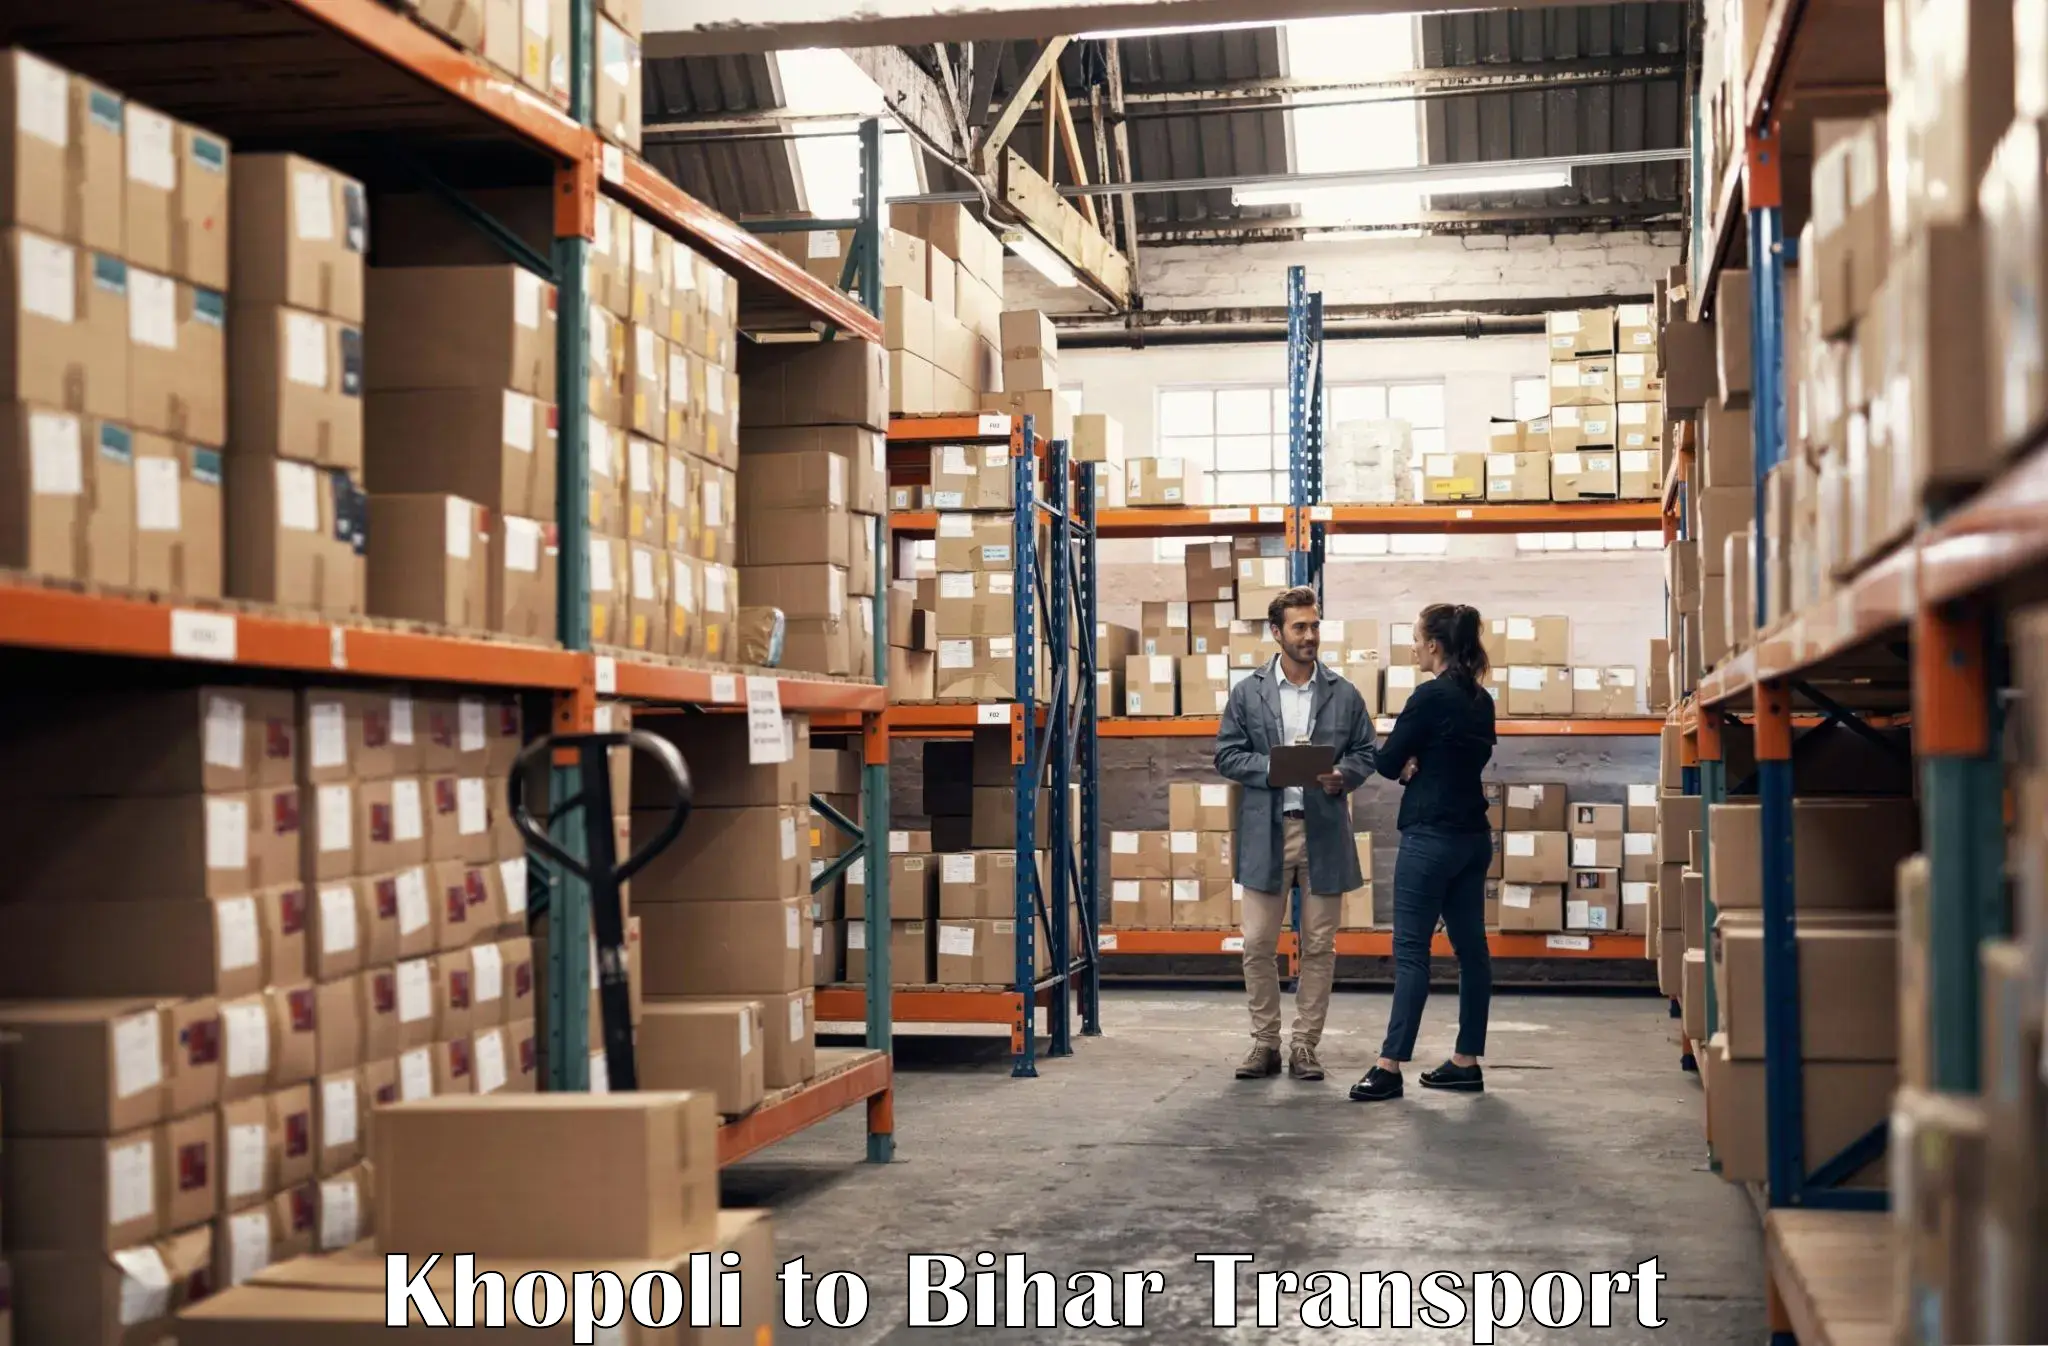 Online transport service Khopoli to Biraul